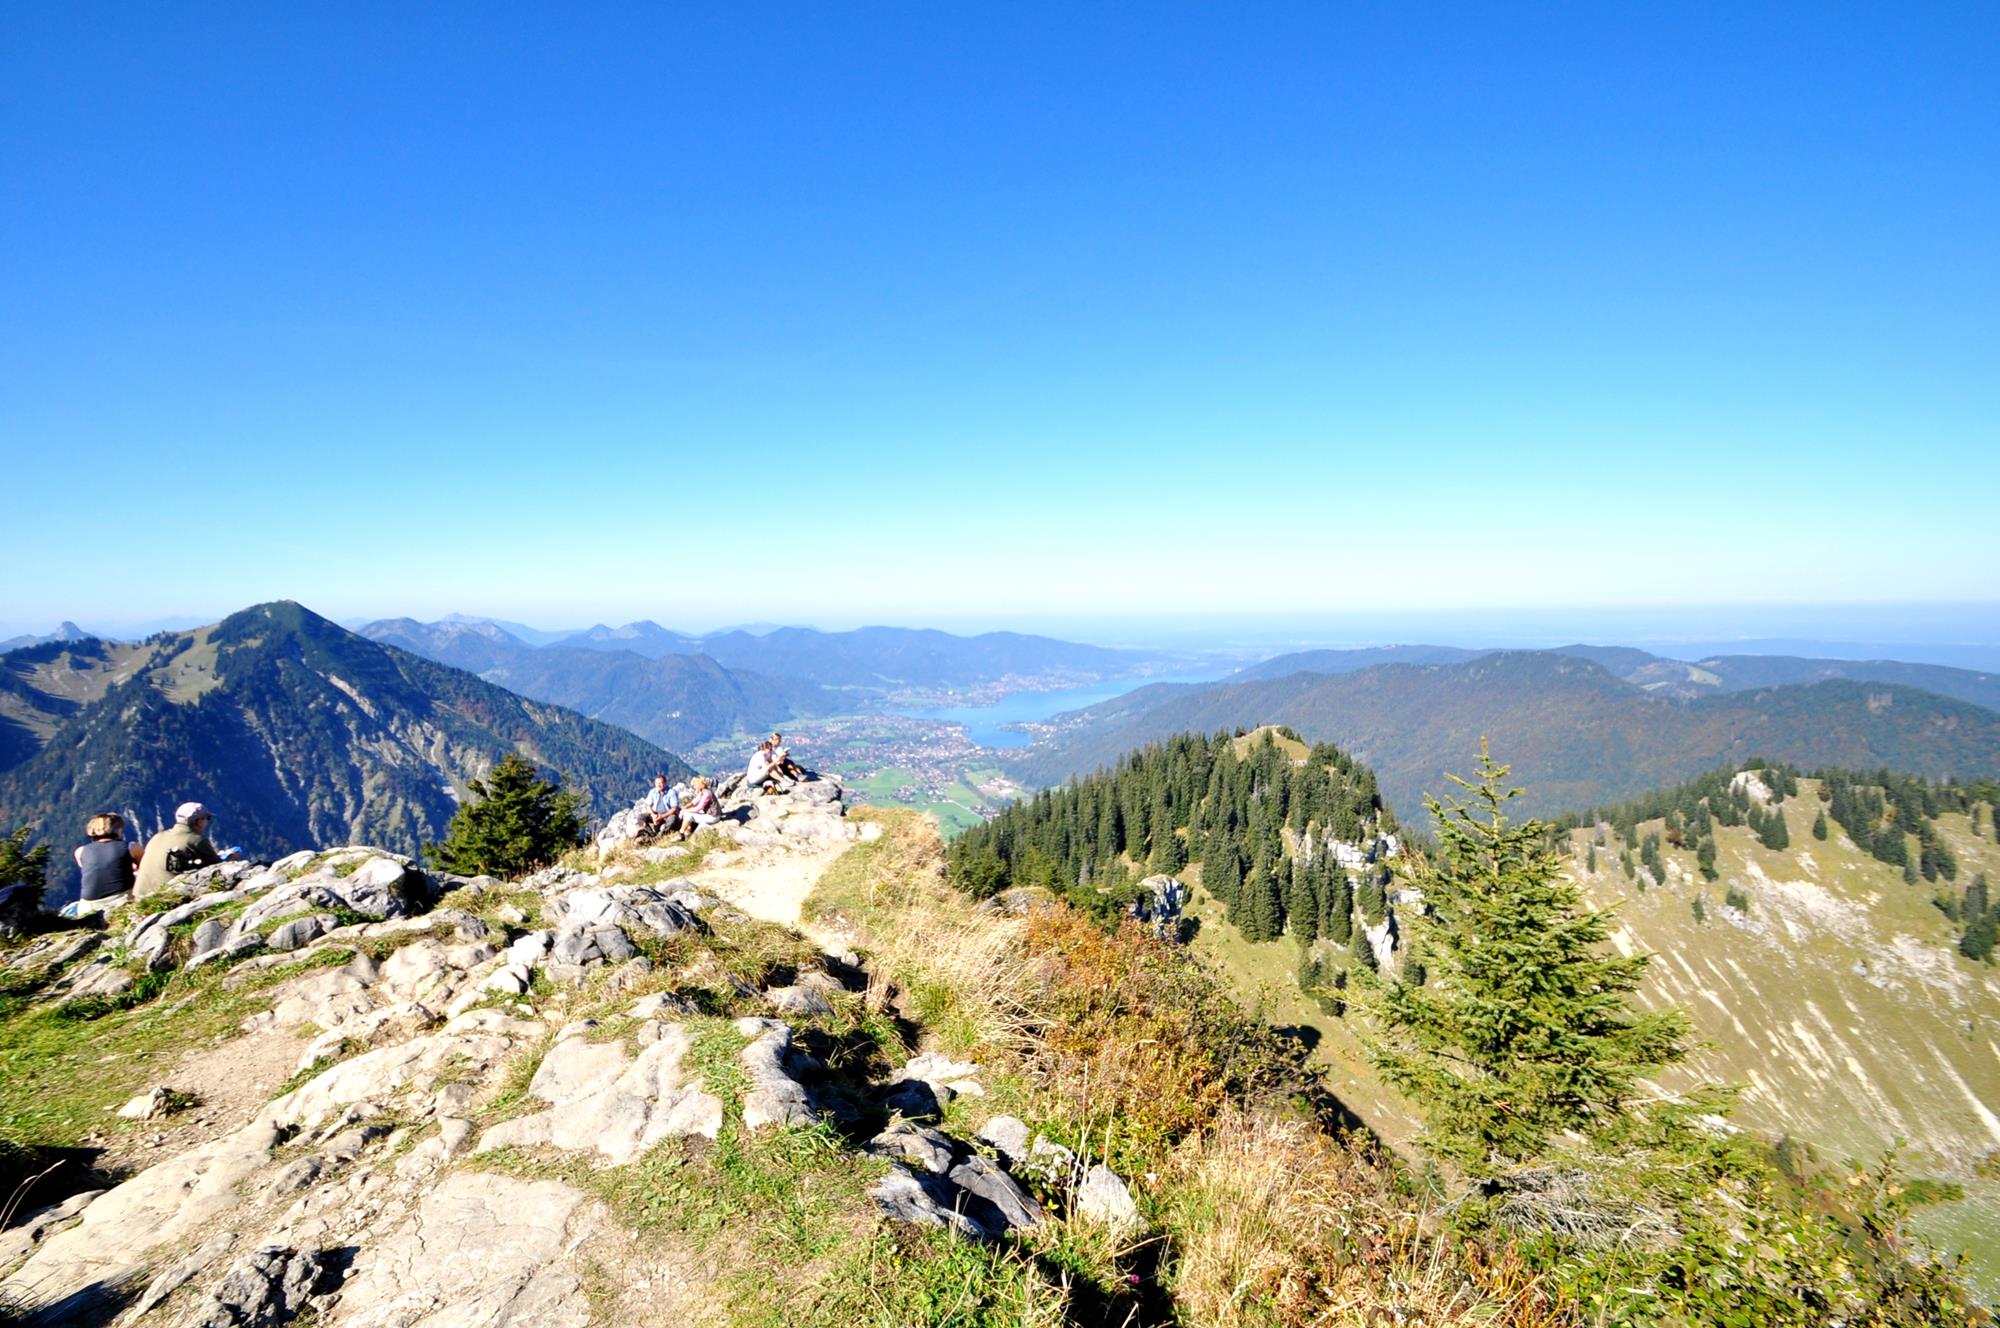 Mehrere Wanderer sitzen bei wolkenlosem Himmel auf einem felsigen Berggipfel. Weit im Hintergrund ist ein blauer See, umrahmt von sanften, grünen Bergen.